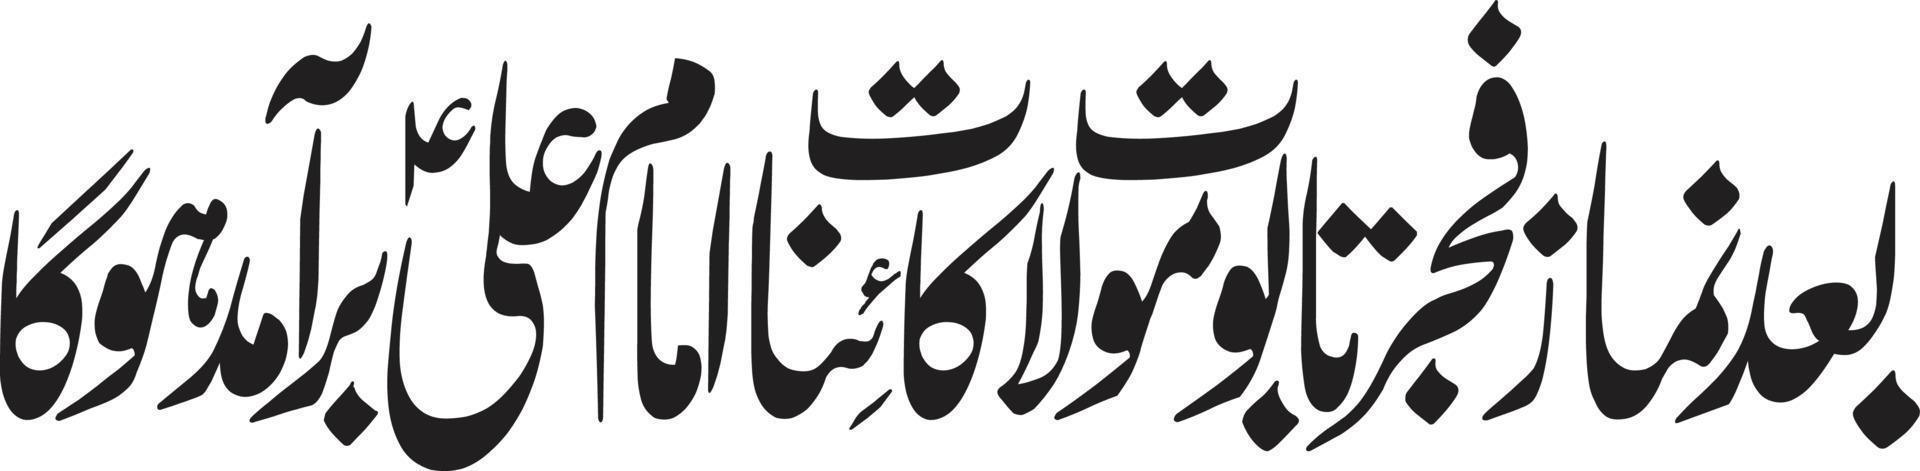 baad namaz fajer tabut mola ali caligrafía urdu islámica vector libre